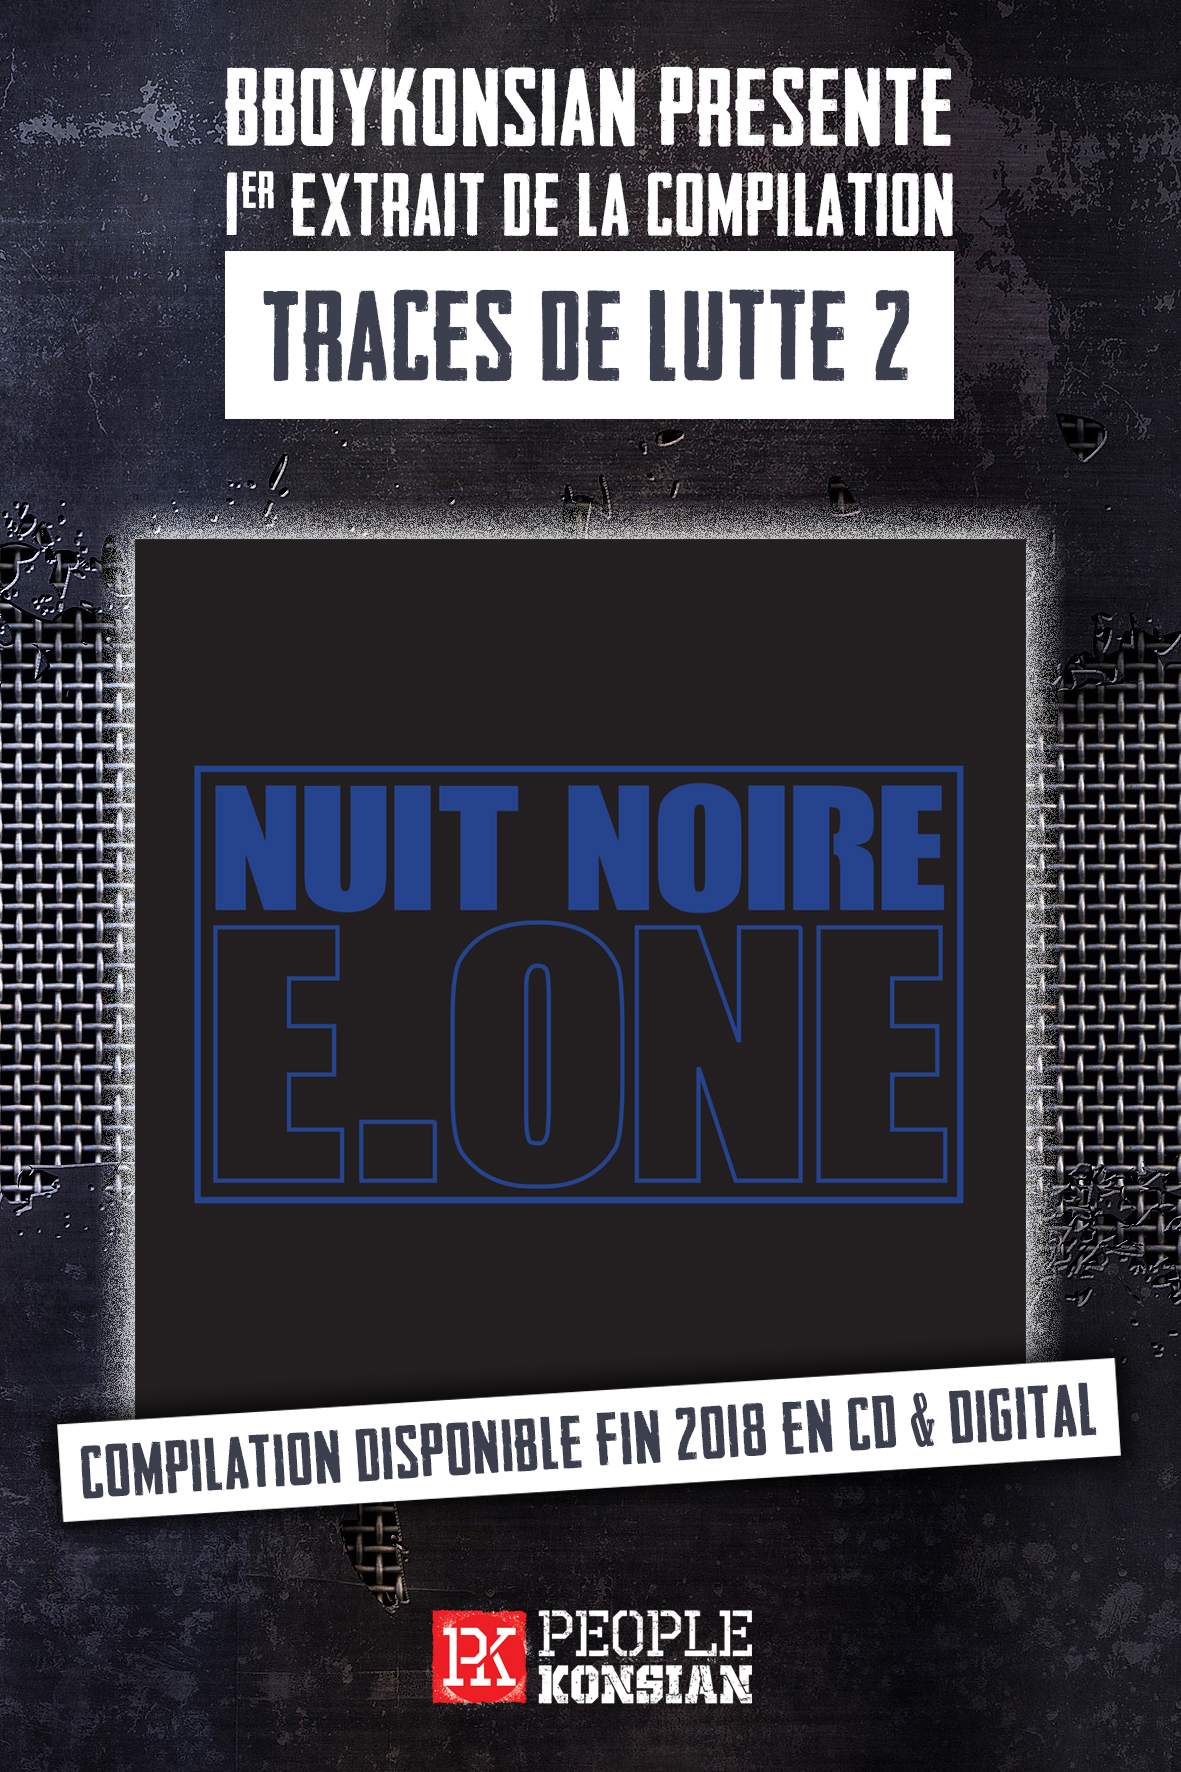 E.One (Première Ligne) "Nuit noire"